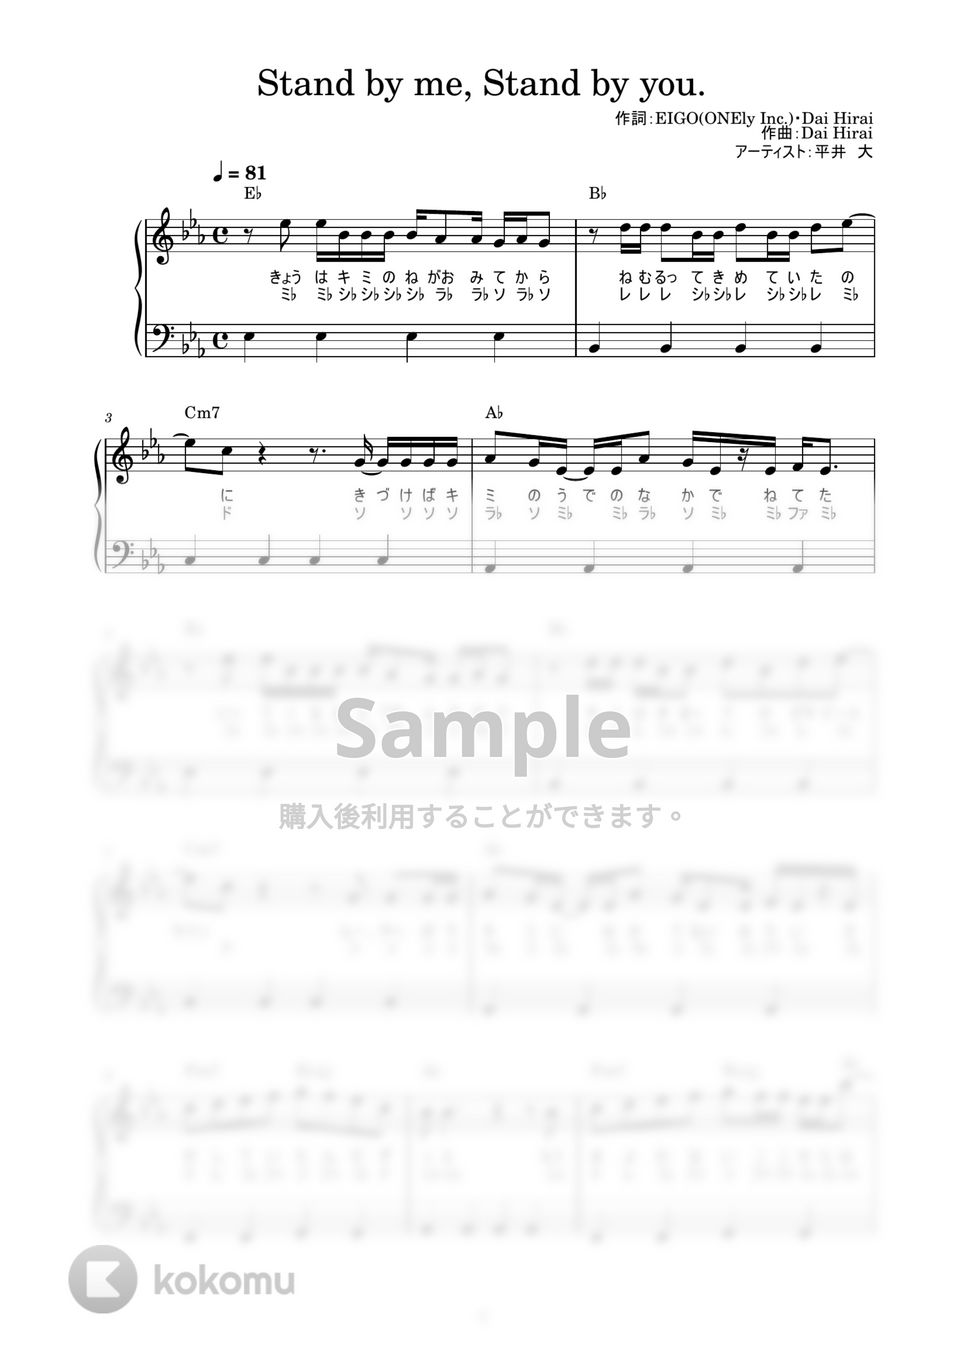 平井 大 - Stand by me, Stand by you. (かんたん / 歌詞付き / ドレミ付き / 初心者) by piano.tokyo